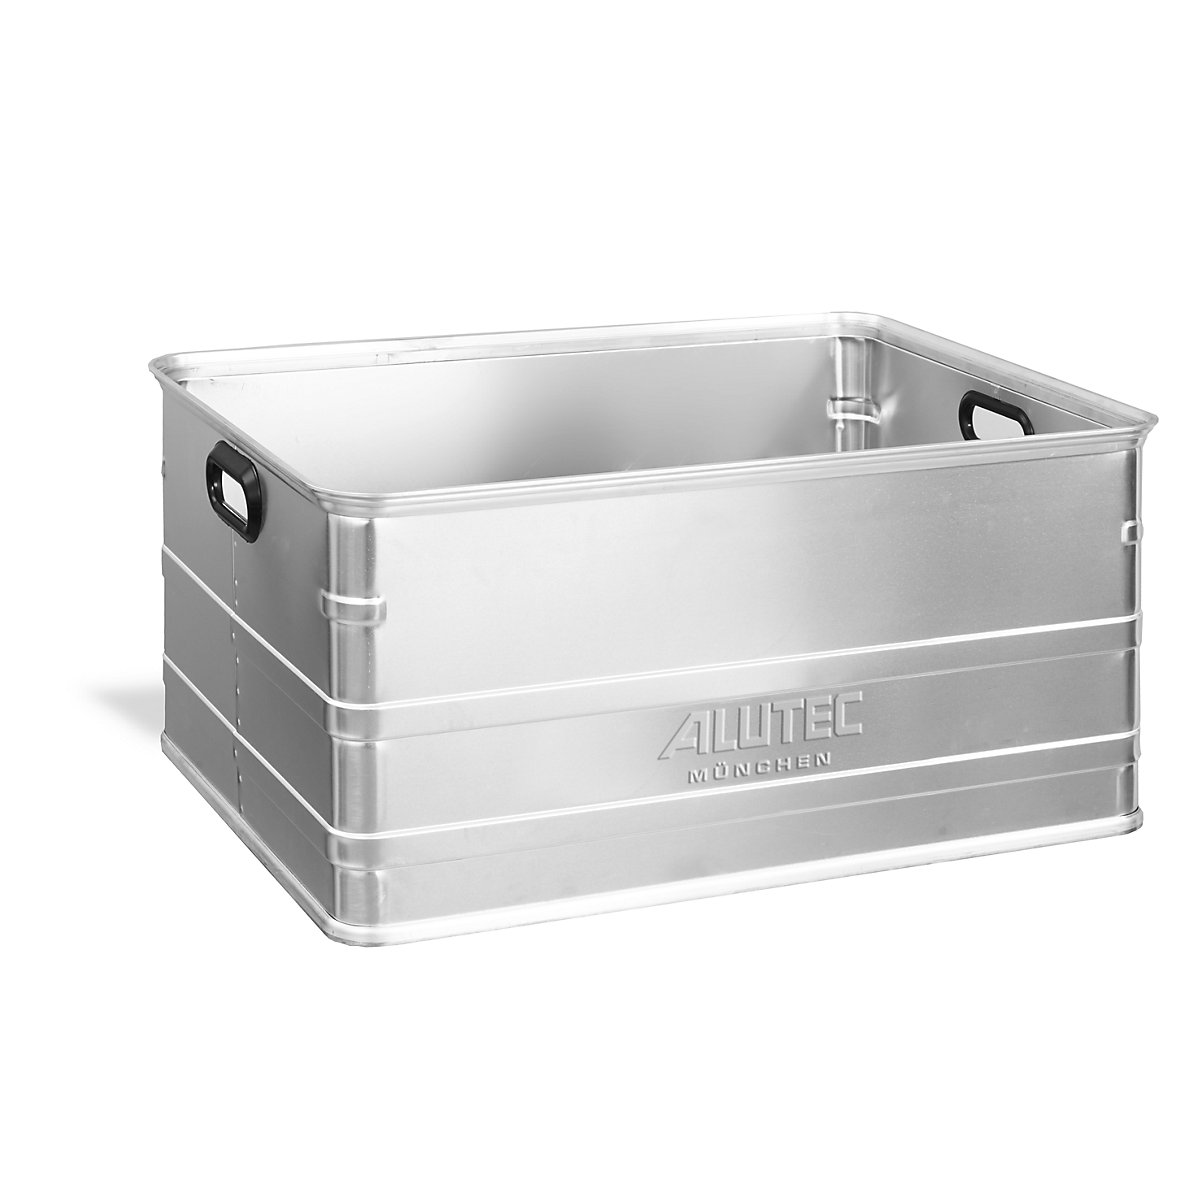 Caisse de manutention en aluminium, compatible avec palettes Europe, capacité 161 l-4